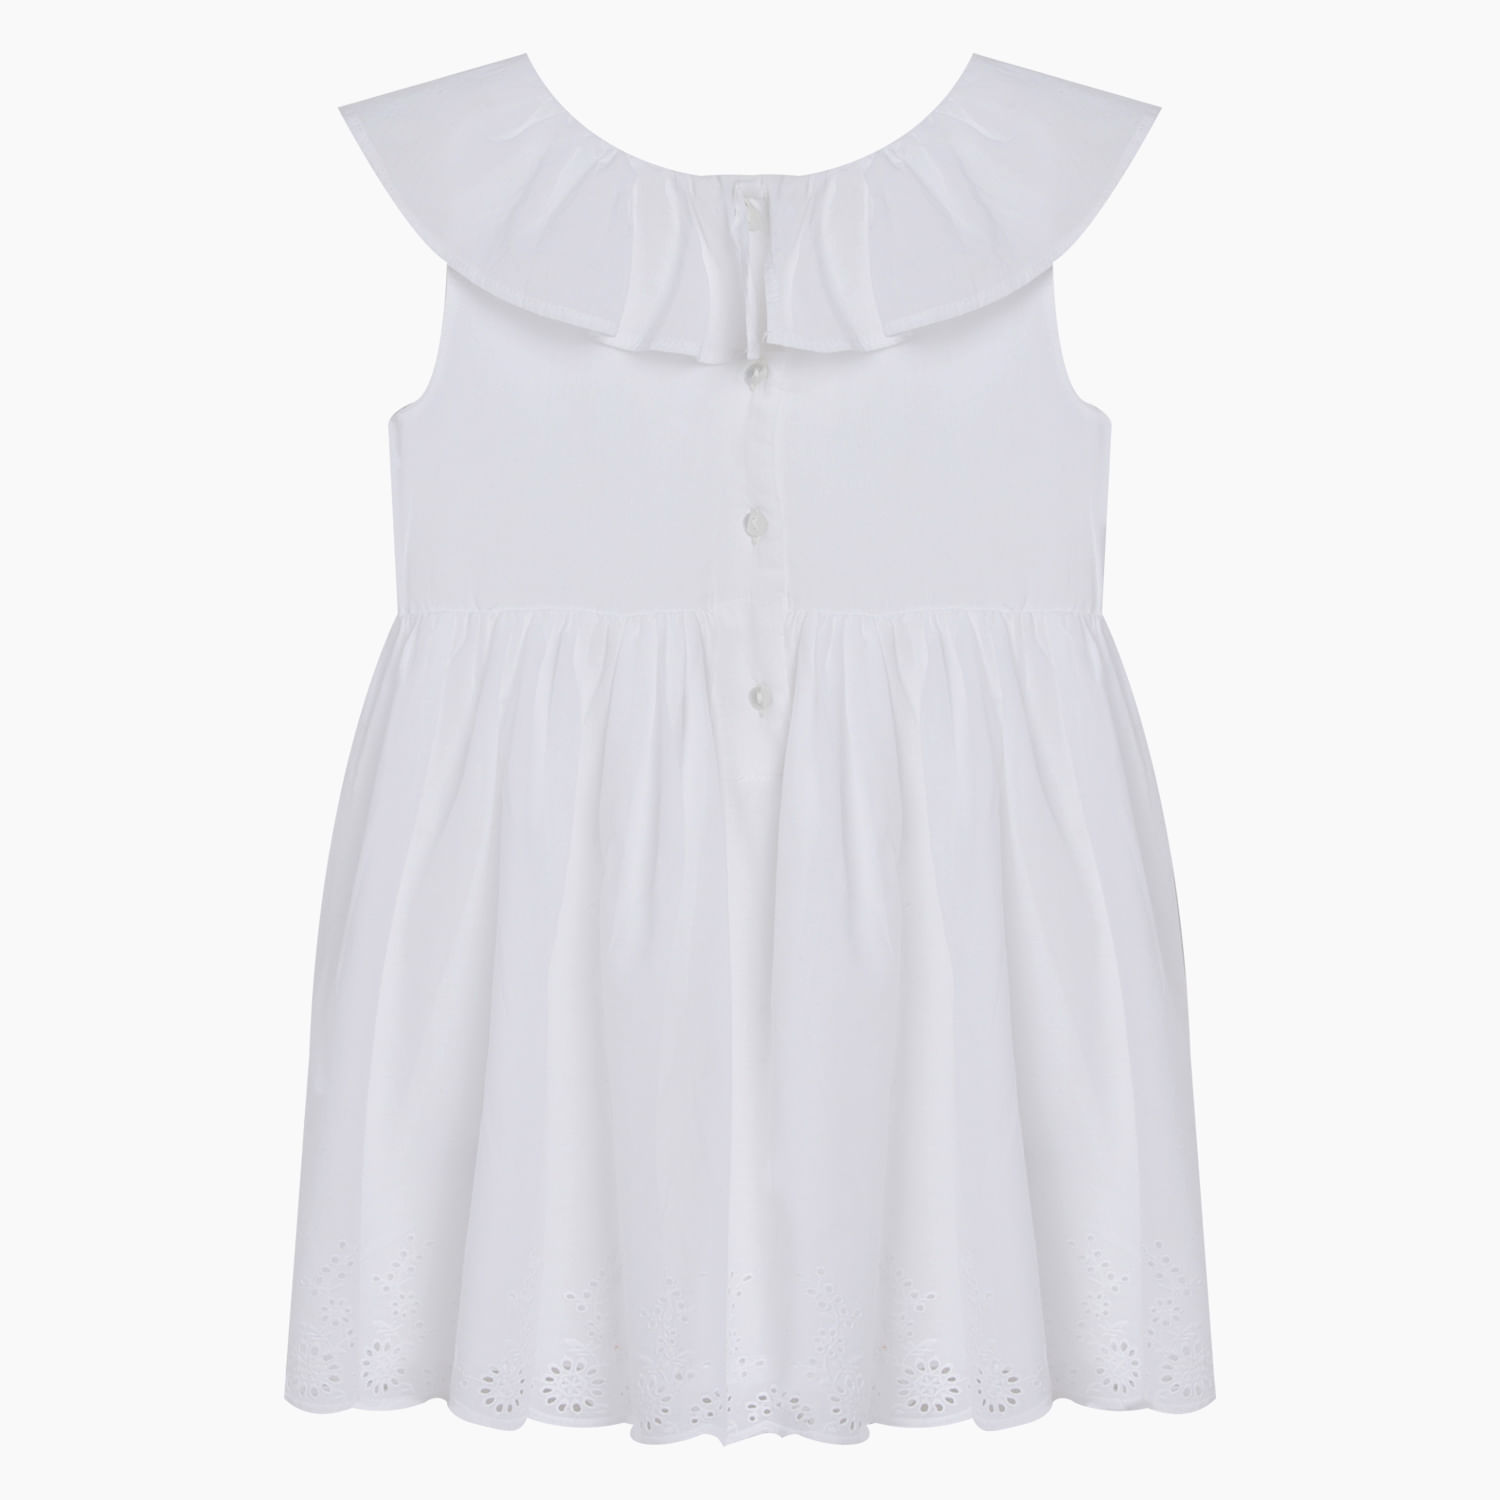 Vestido de niña bordado blanco (2 a 12 años) - Colloky Chile